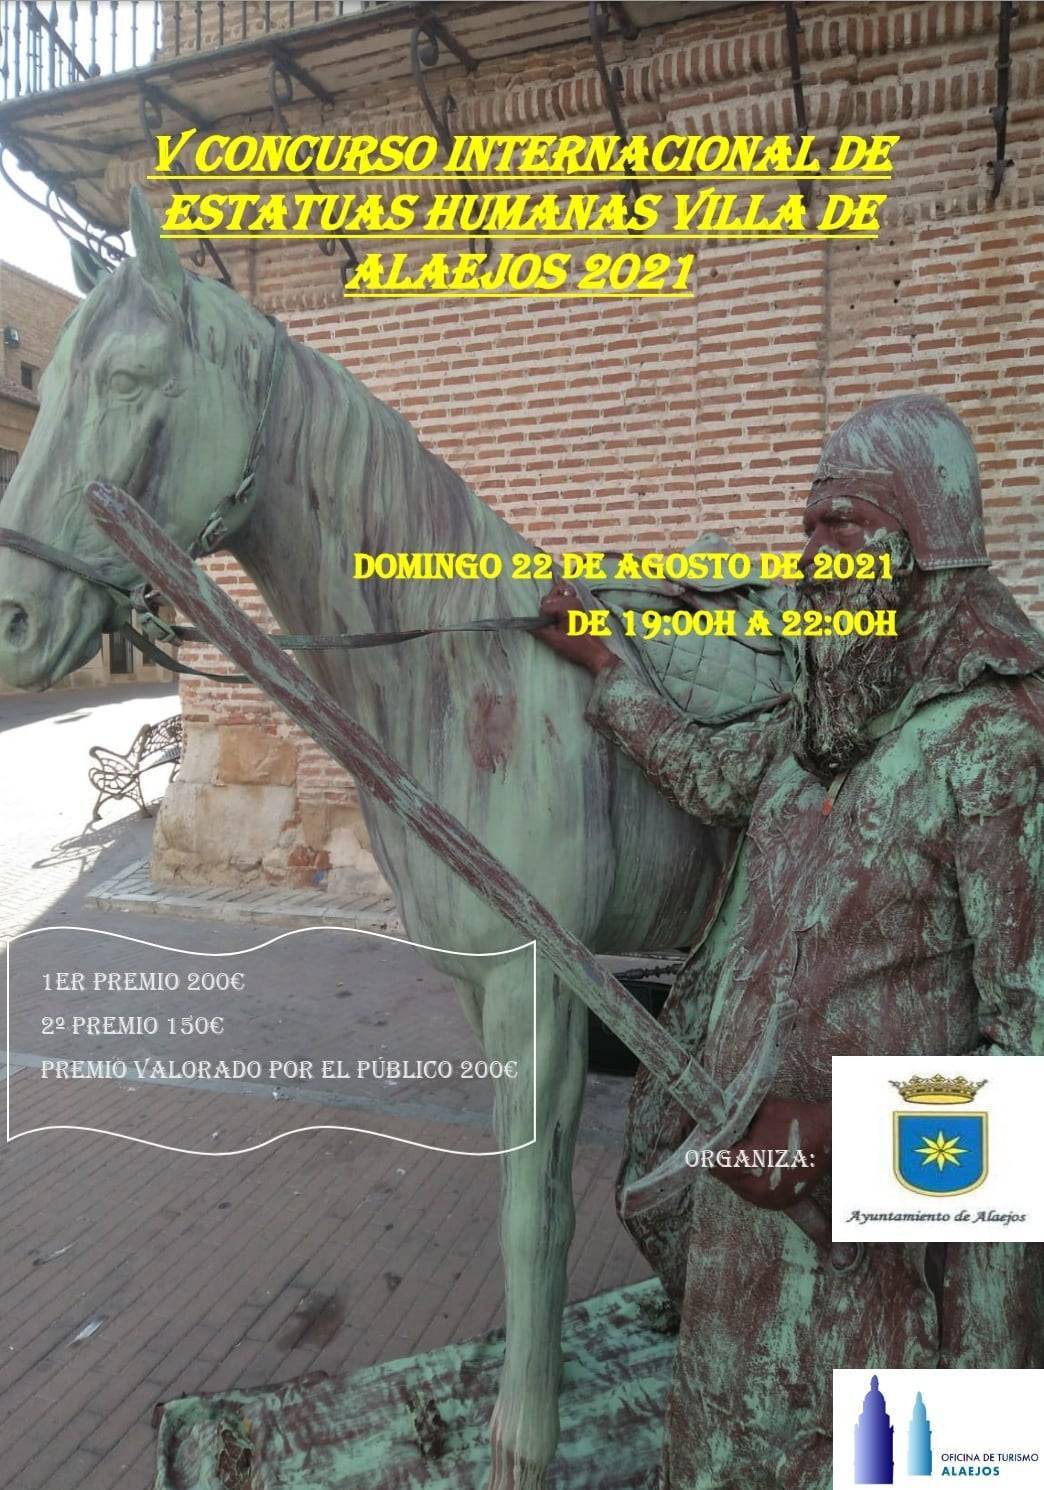 V Concurso Internacional de Estatuas Humanas 'Villa de Alaejos' - Alaejos (Valladolid)